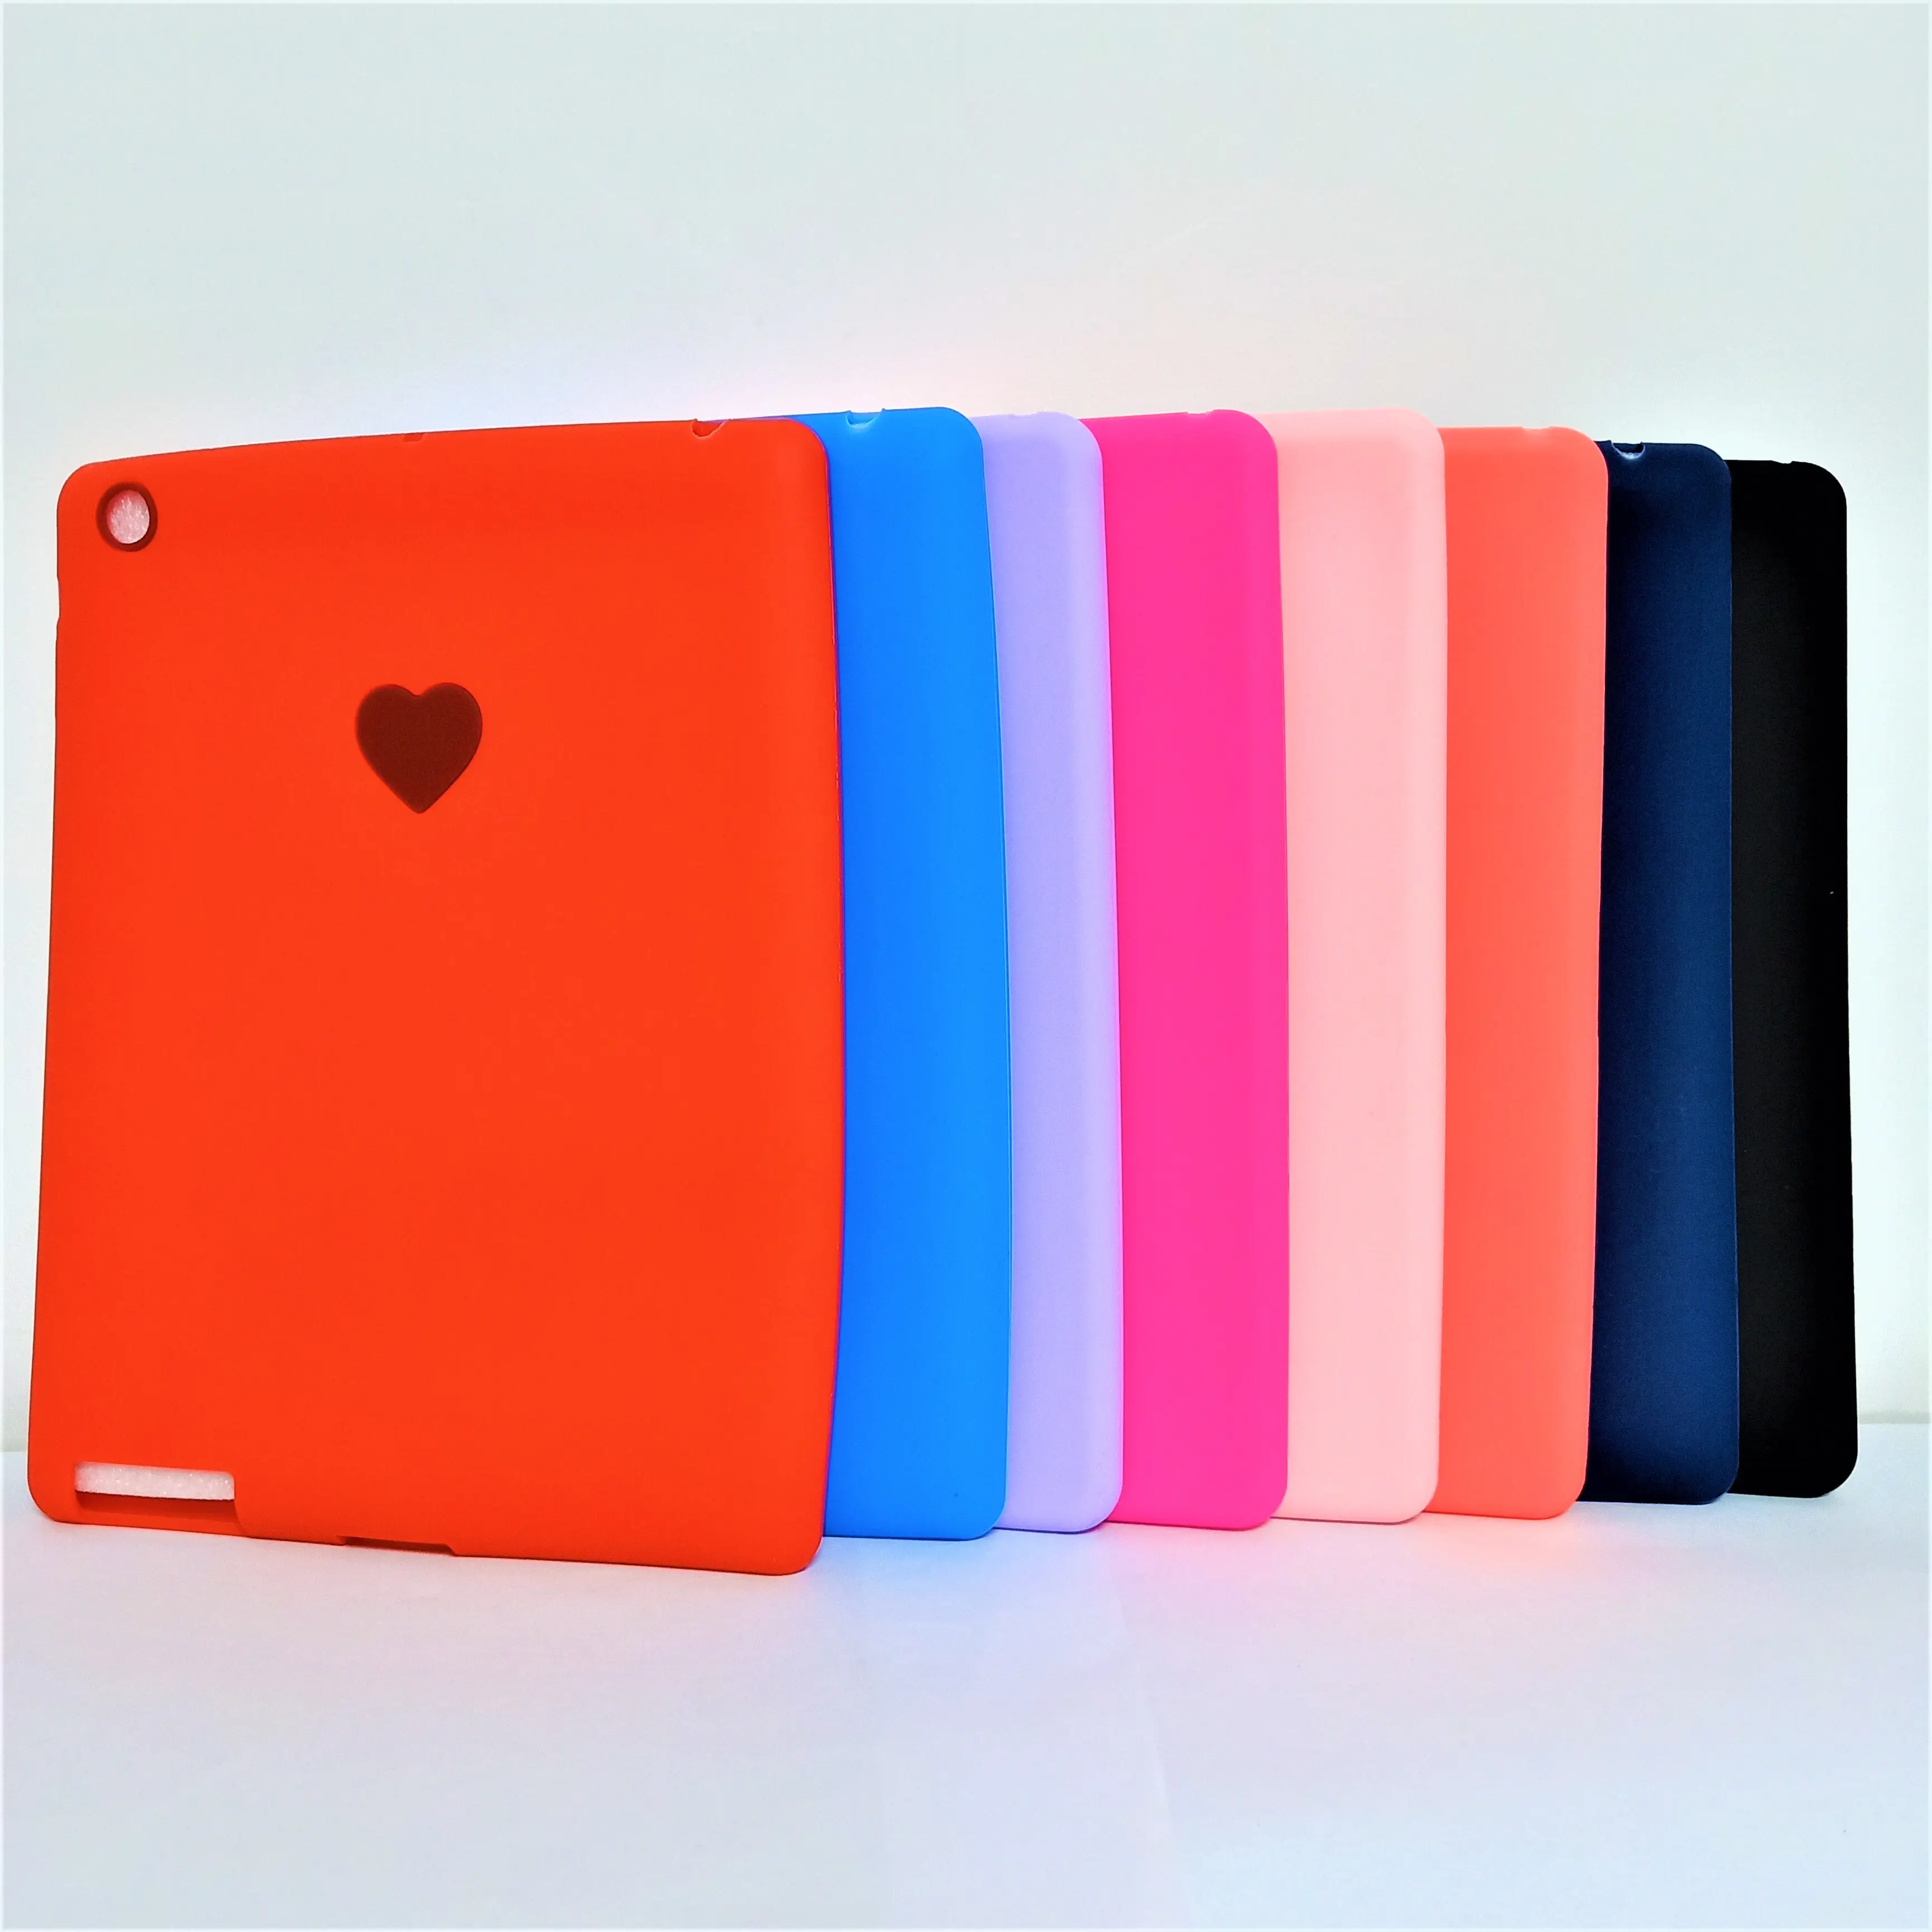 तीन सुरक्षा वाले बच्चों के आईपैड टैबलेट सुरक्षात्मक केस सिलिकॉन शॉक-प्रूफ 234 रंग विकल्पों के साथ